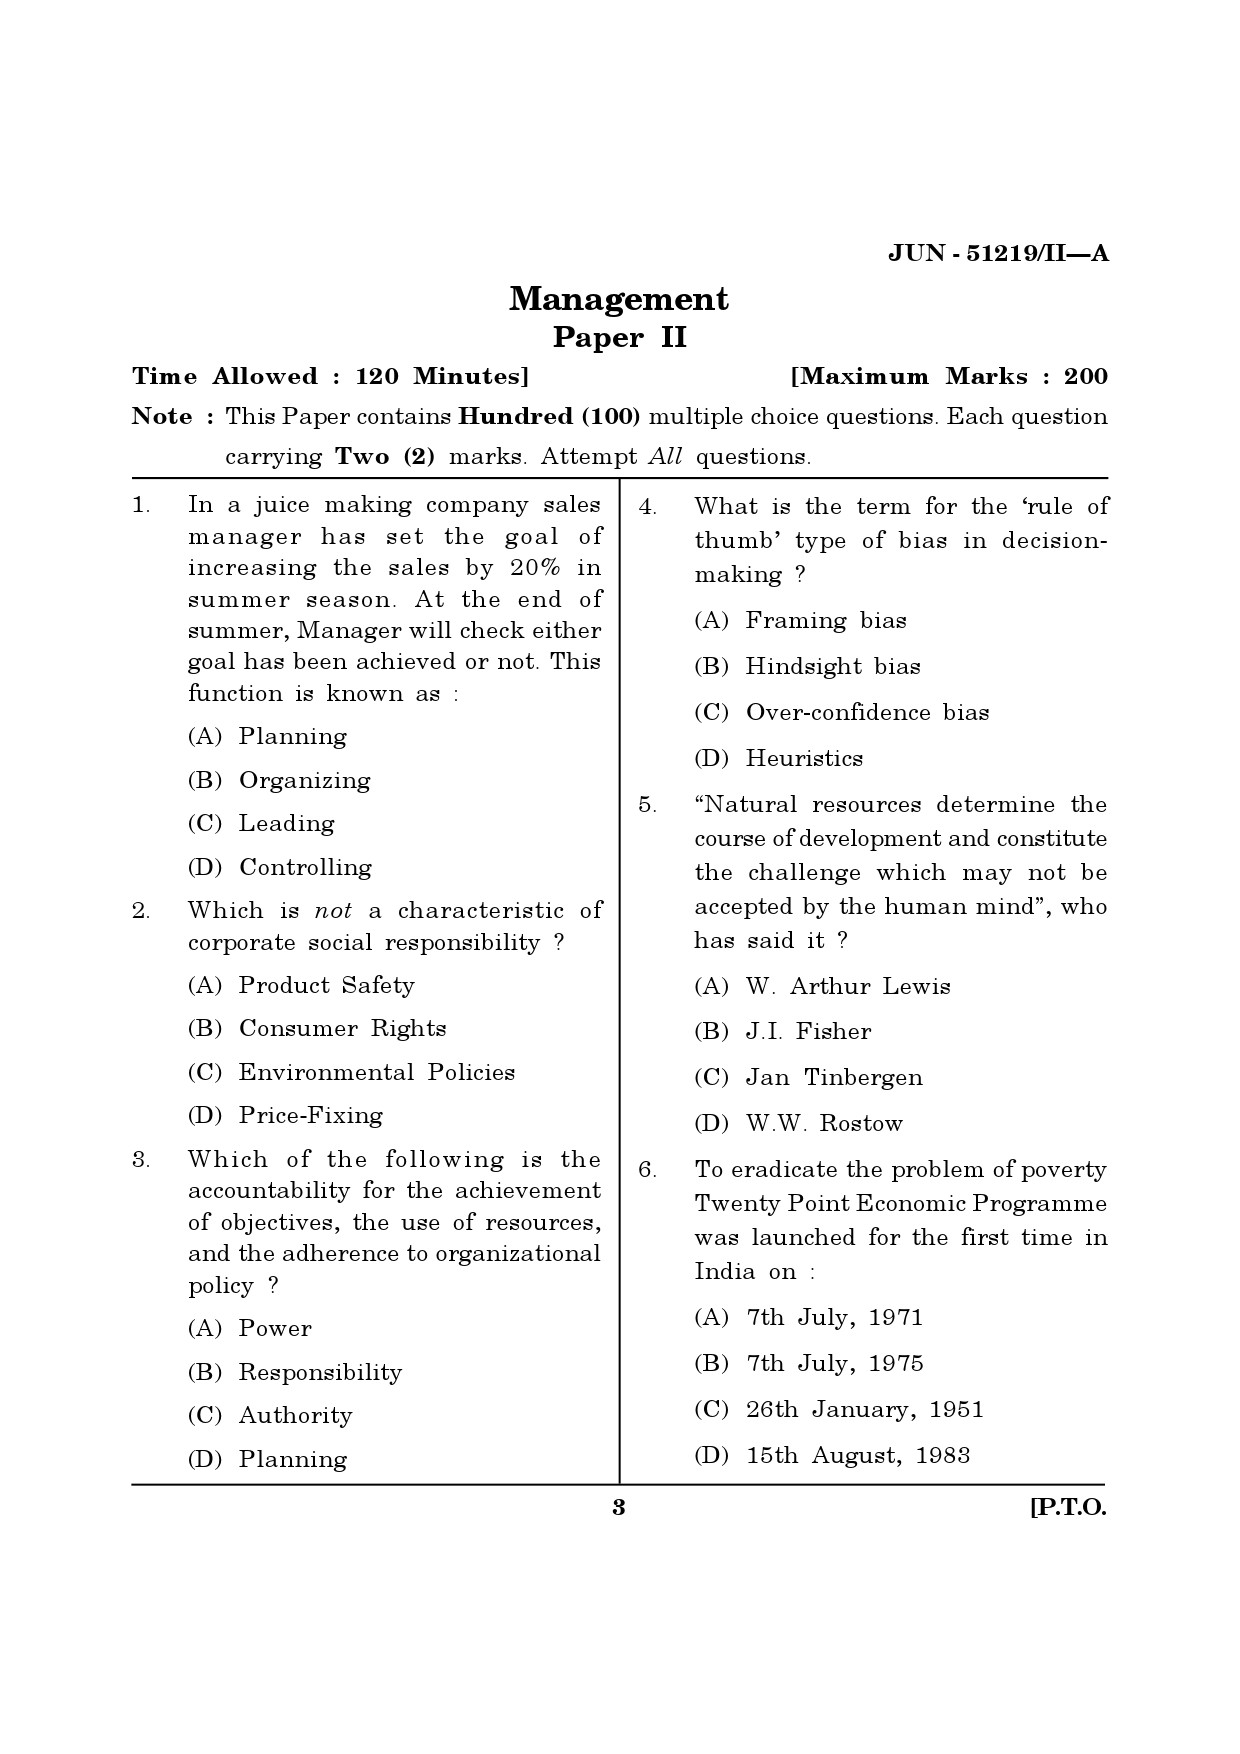 Maharashtra SET Management Question Paper II June 2019 2